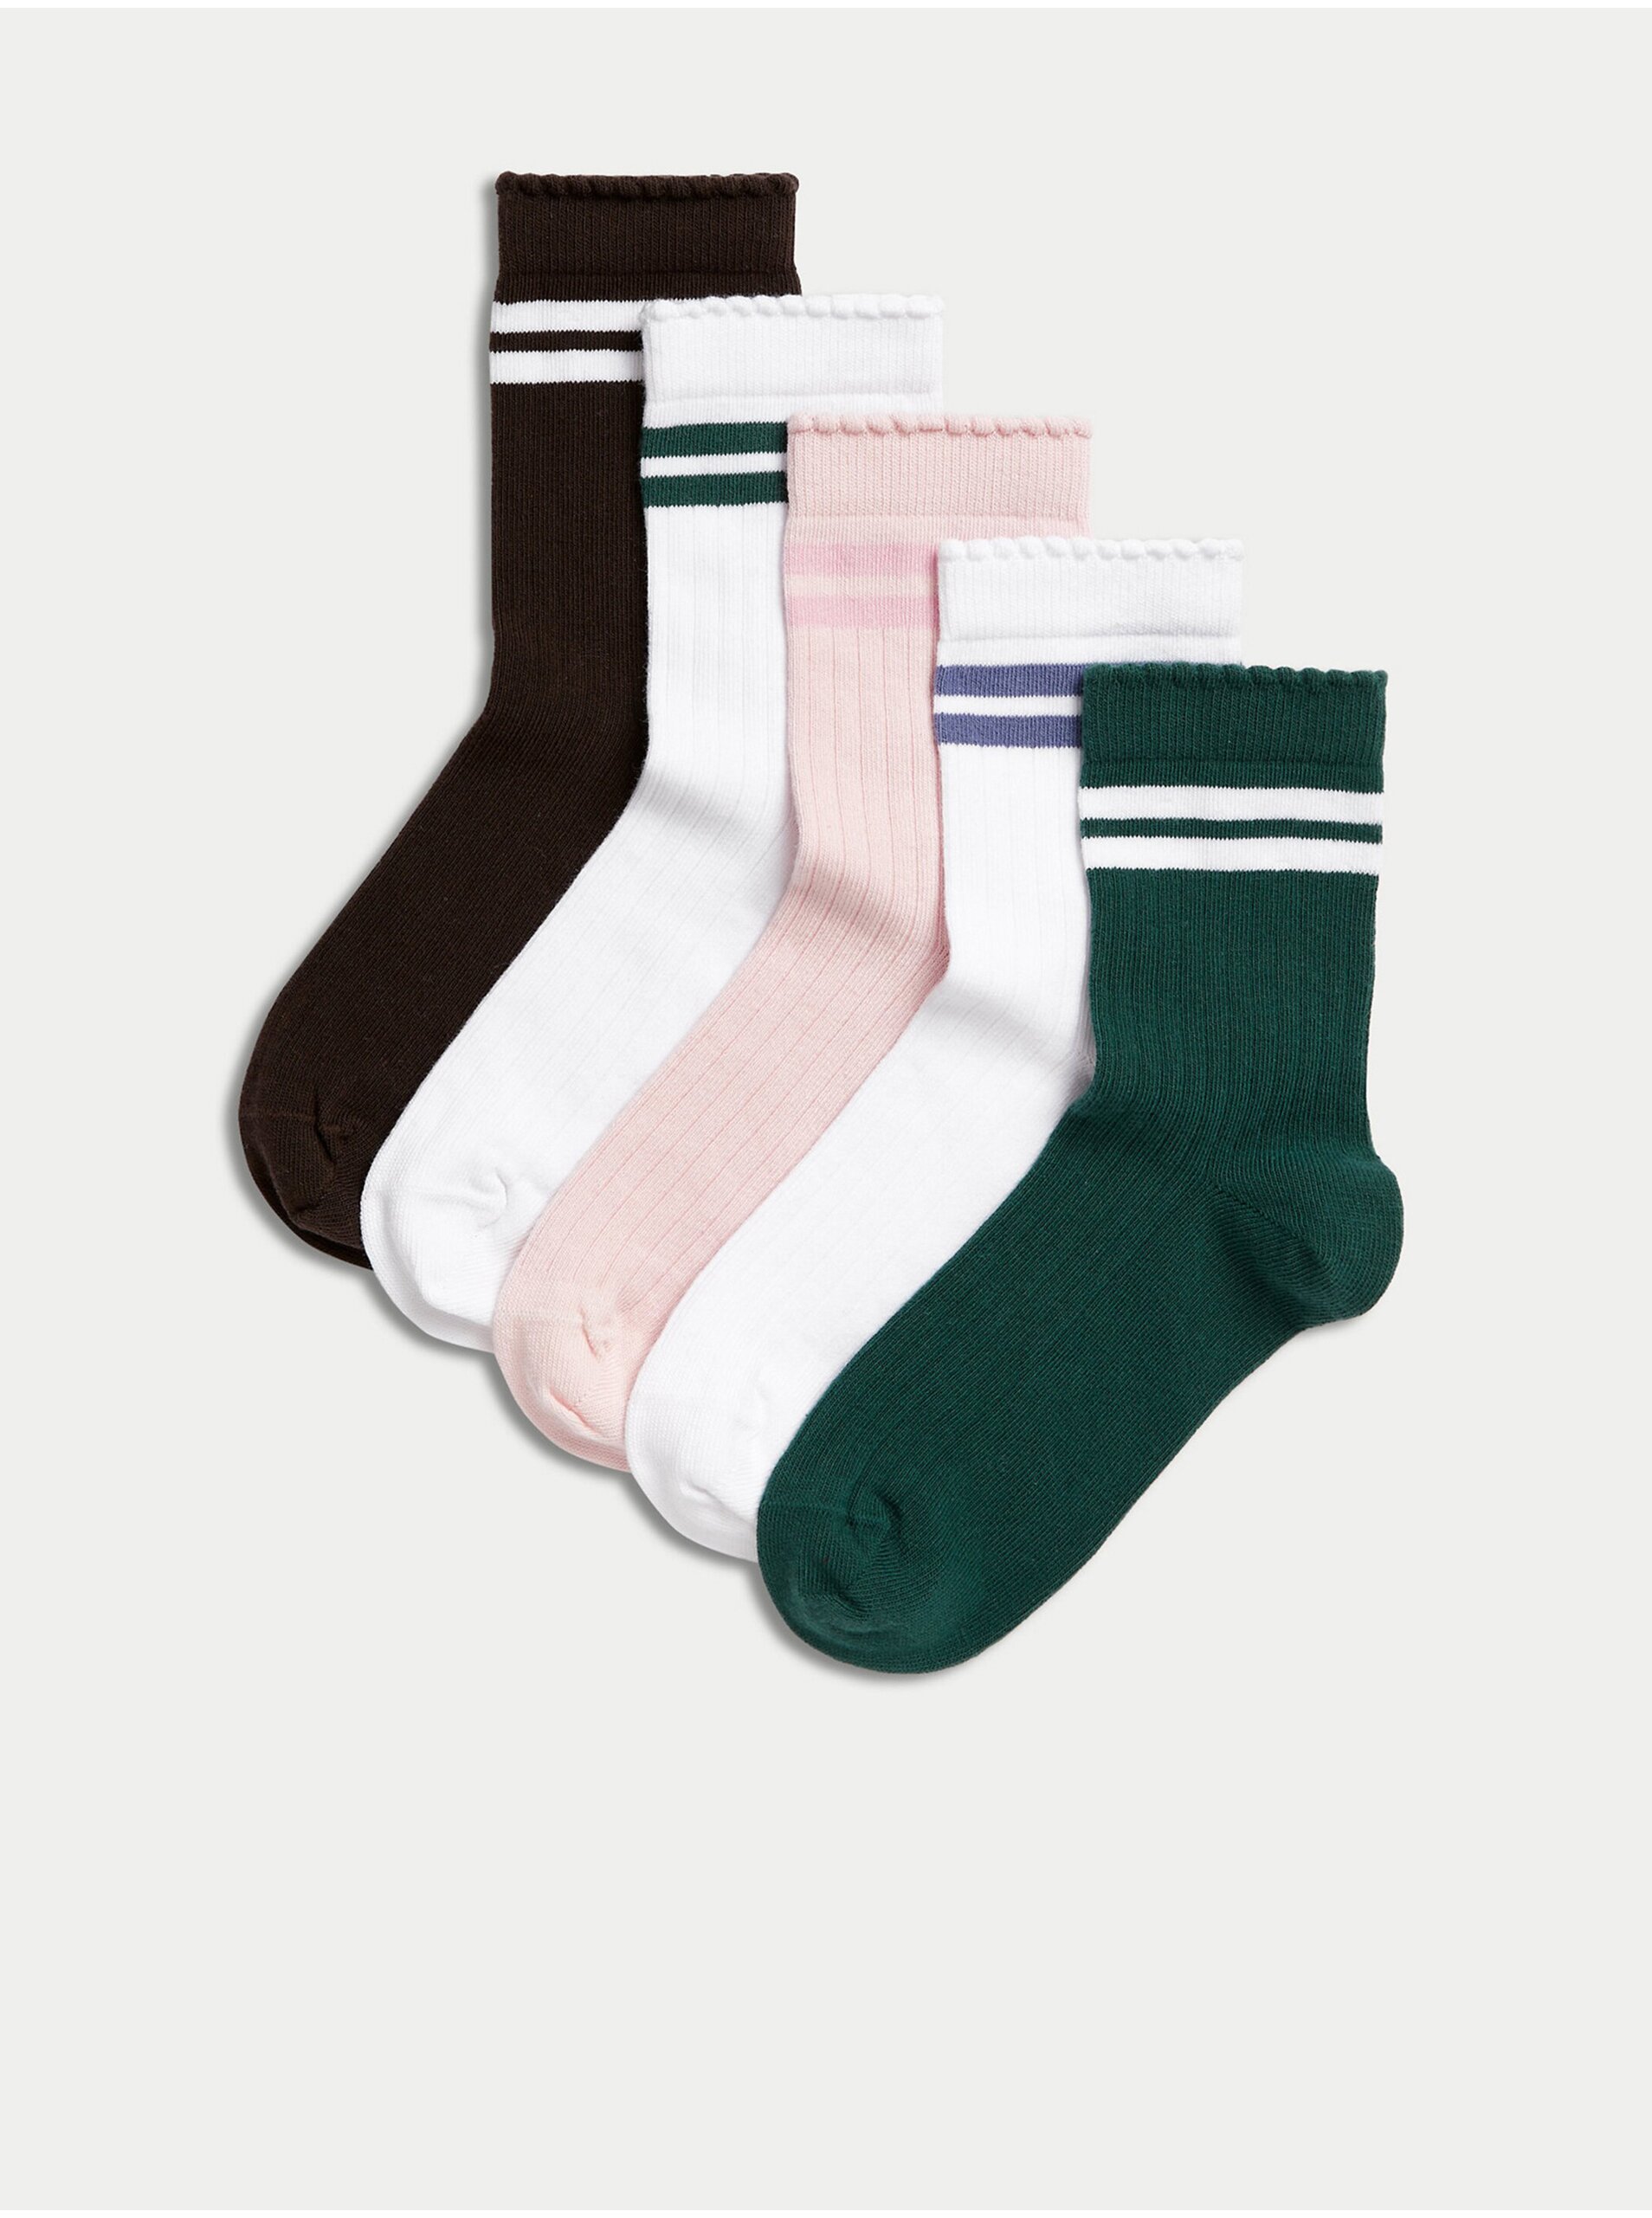 E-shop Sada pěti párů holčičích ponožek včerné, bílé a modré barvě Marks & Spencer